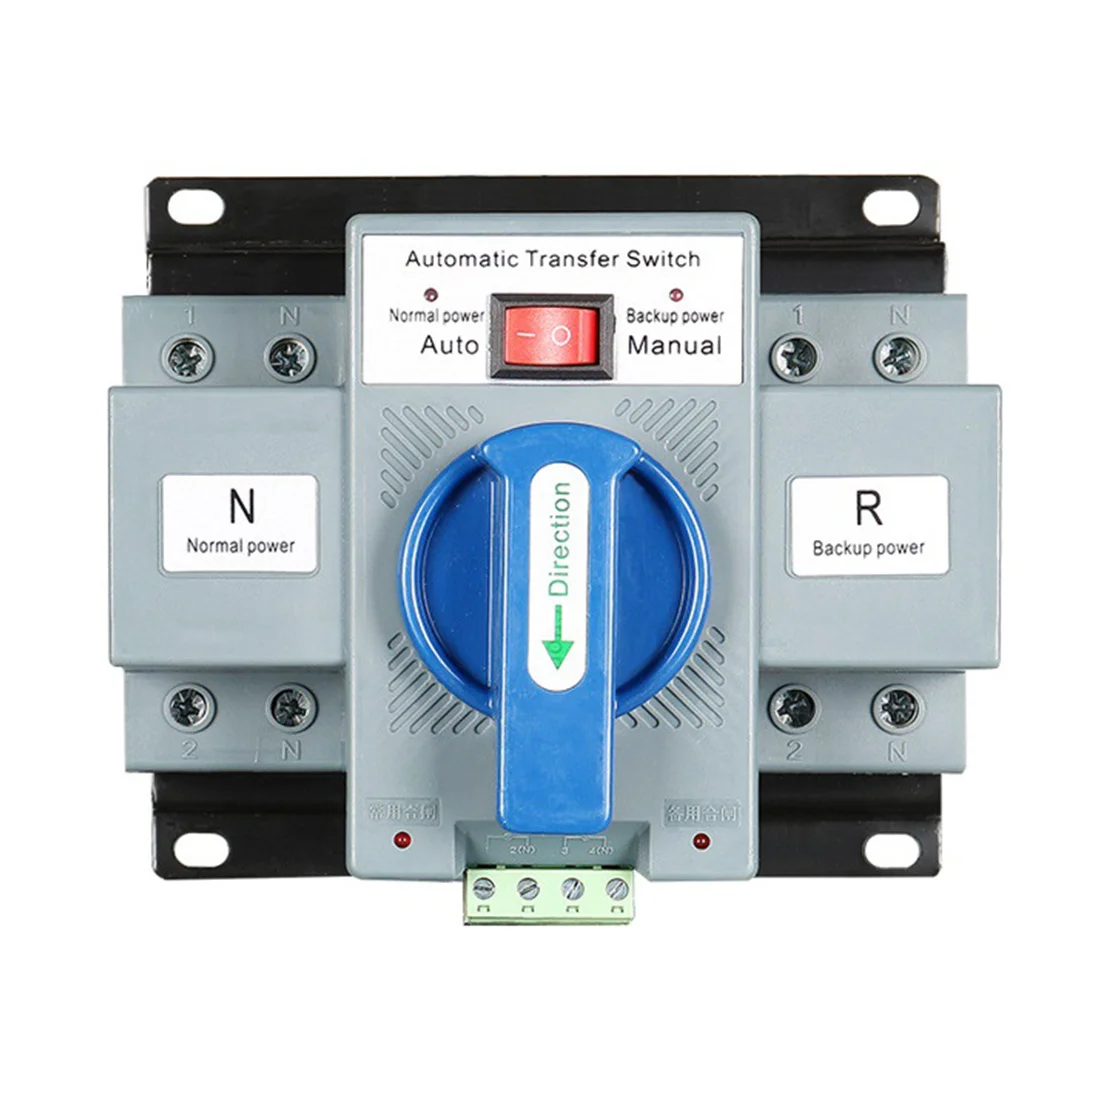 

Автоматический переключатель 2P 63a 230 в типа MCB с двойным питанием номинальное напряжение 230 в номинальная частота 50/60 гц